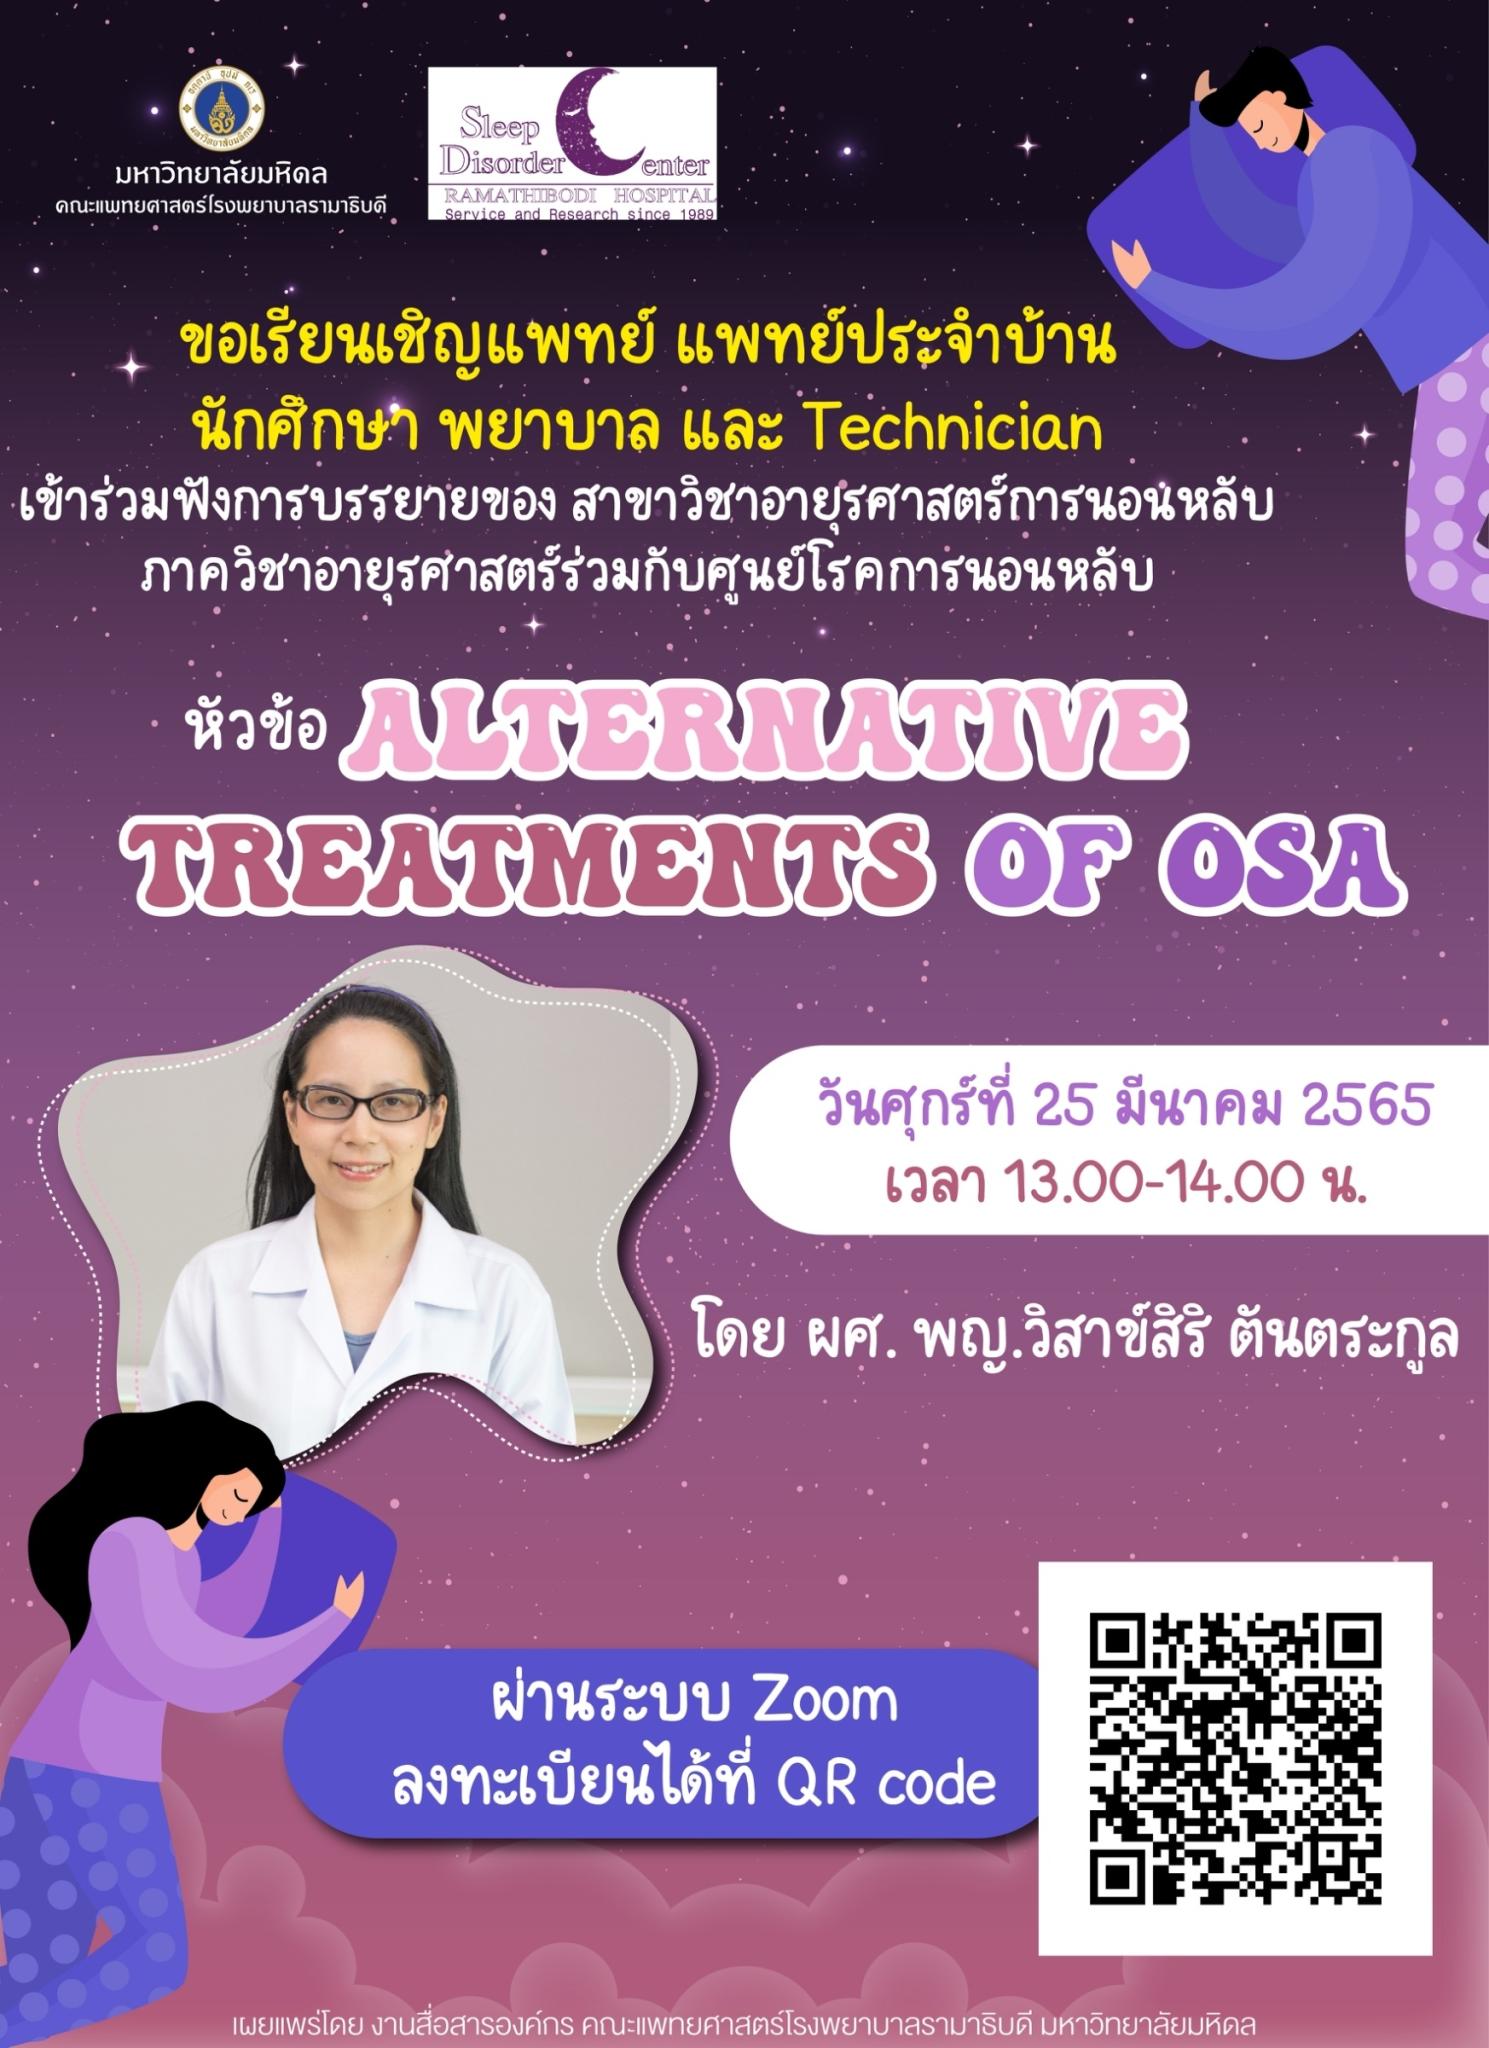 ขอเชิญร่วมฟังการบรรยาย หัวข้อ ALTERNATIVE TREATMENTS OF OSA 